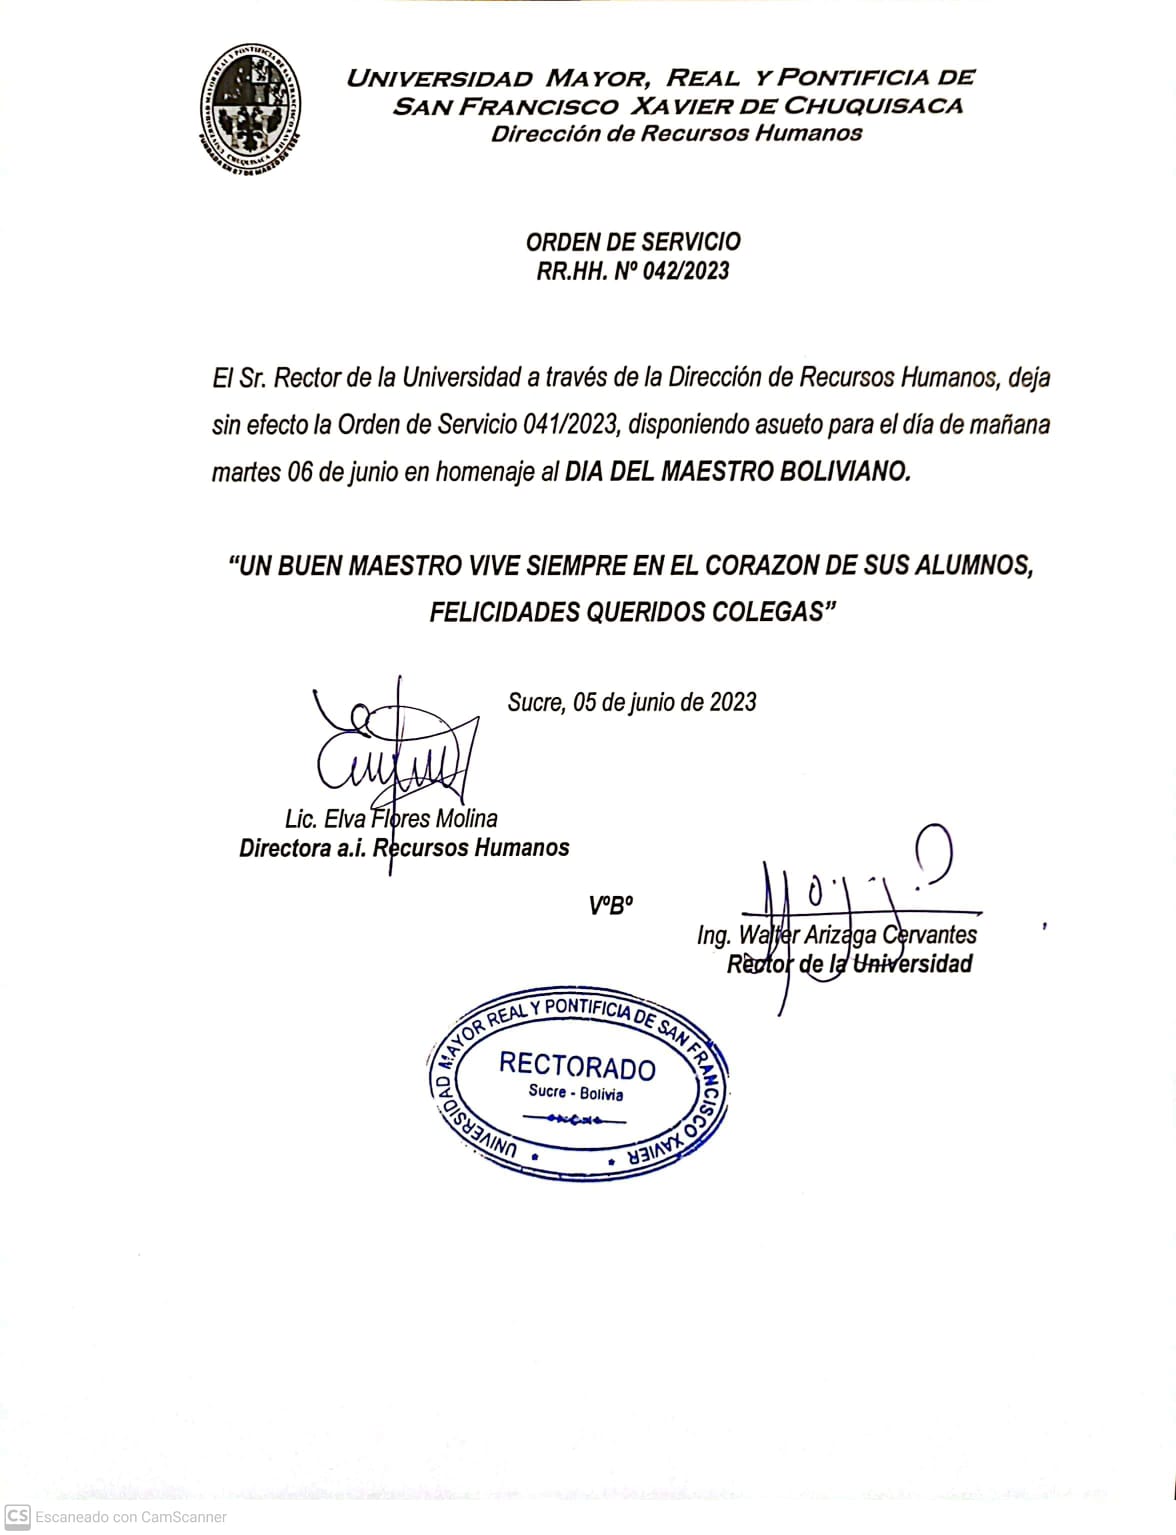 ORDEN DE SERVICIO RR.HH. N° 042/2023 DÍA DEL MAESTRO BOLIVIANO.